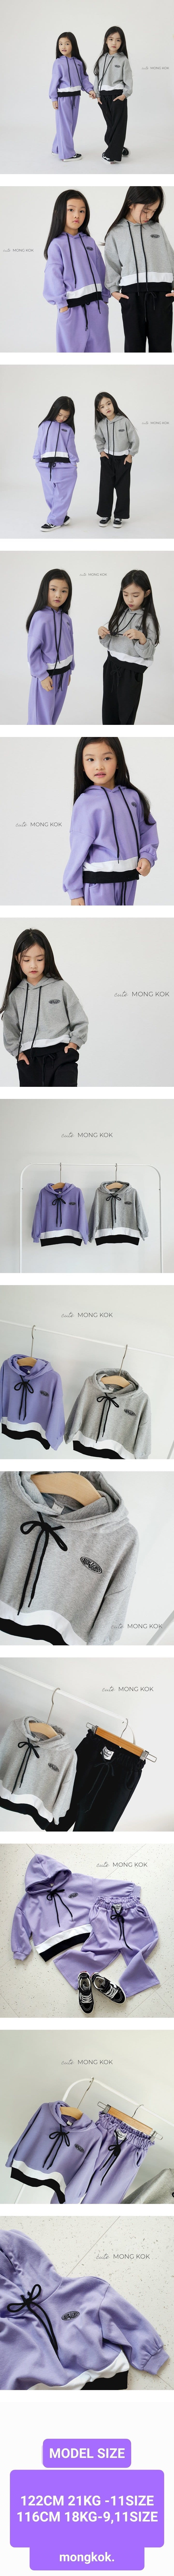 Mong Kok - Korean Children Fashion - #fashionkids - Hat Tee